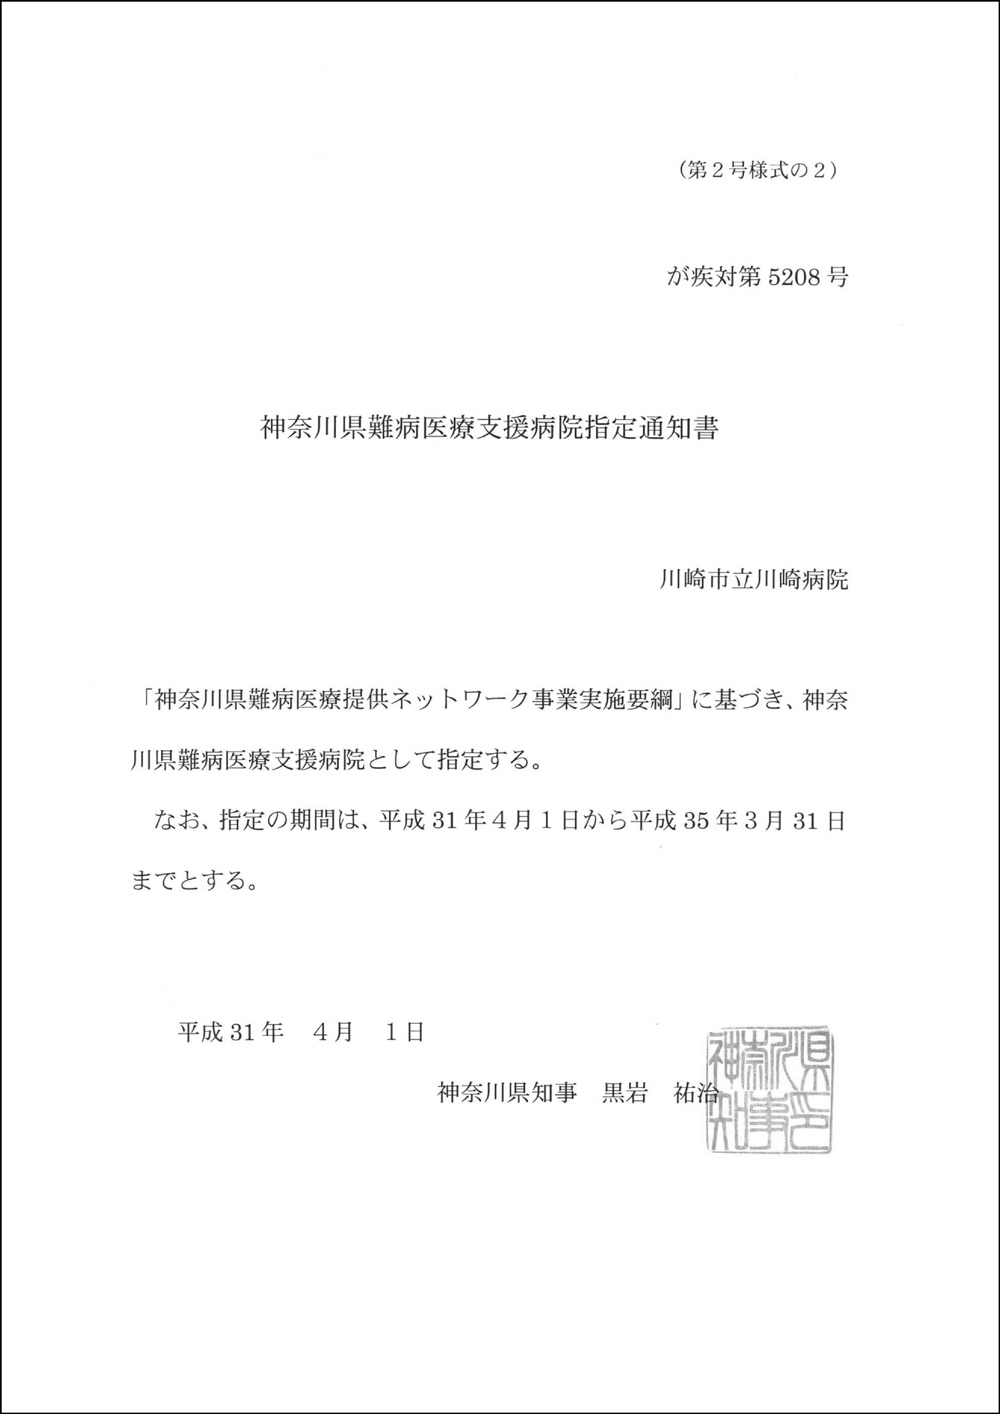 神奈川県難病医療支援病院指定通知書